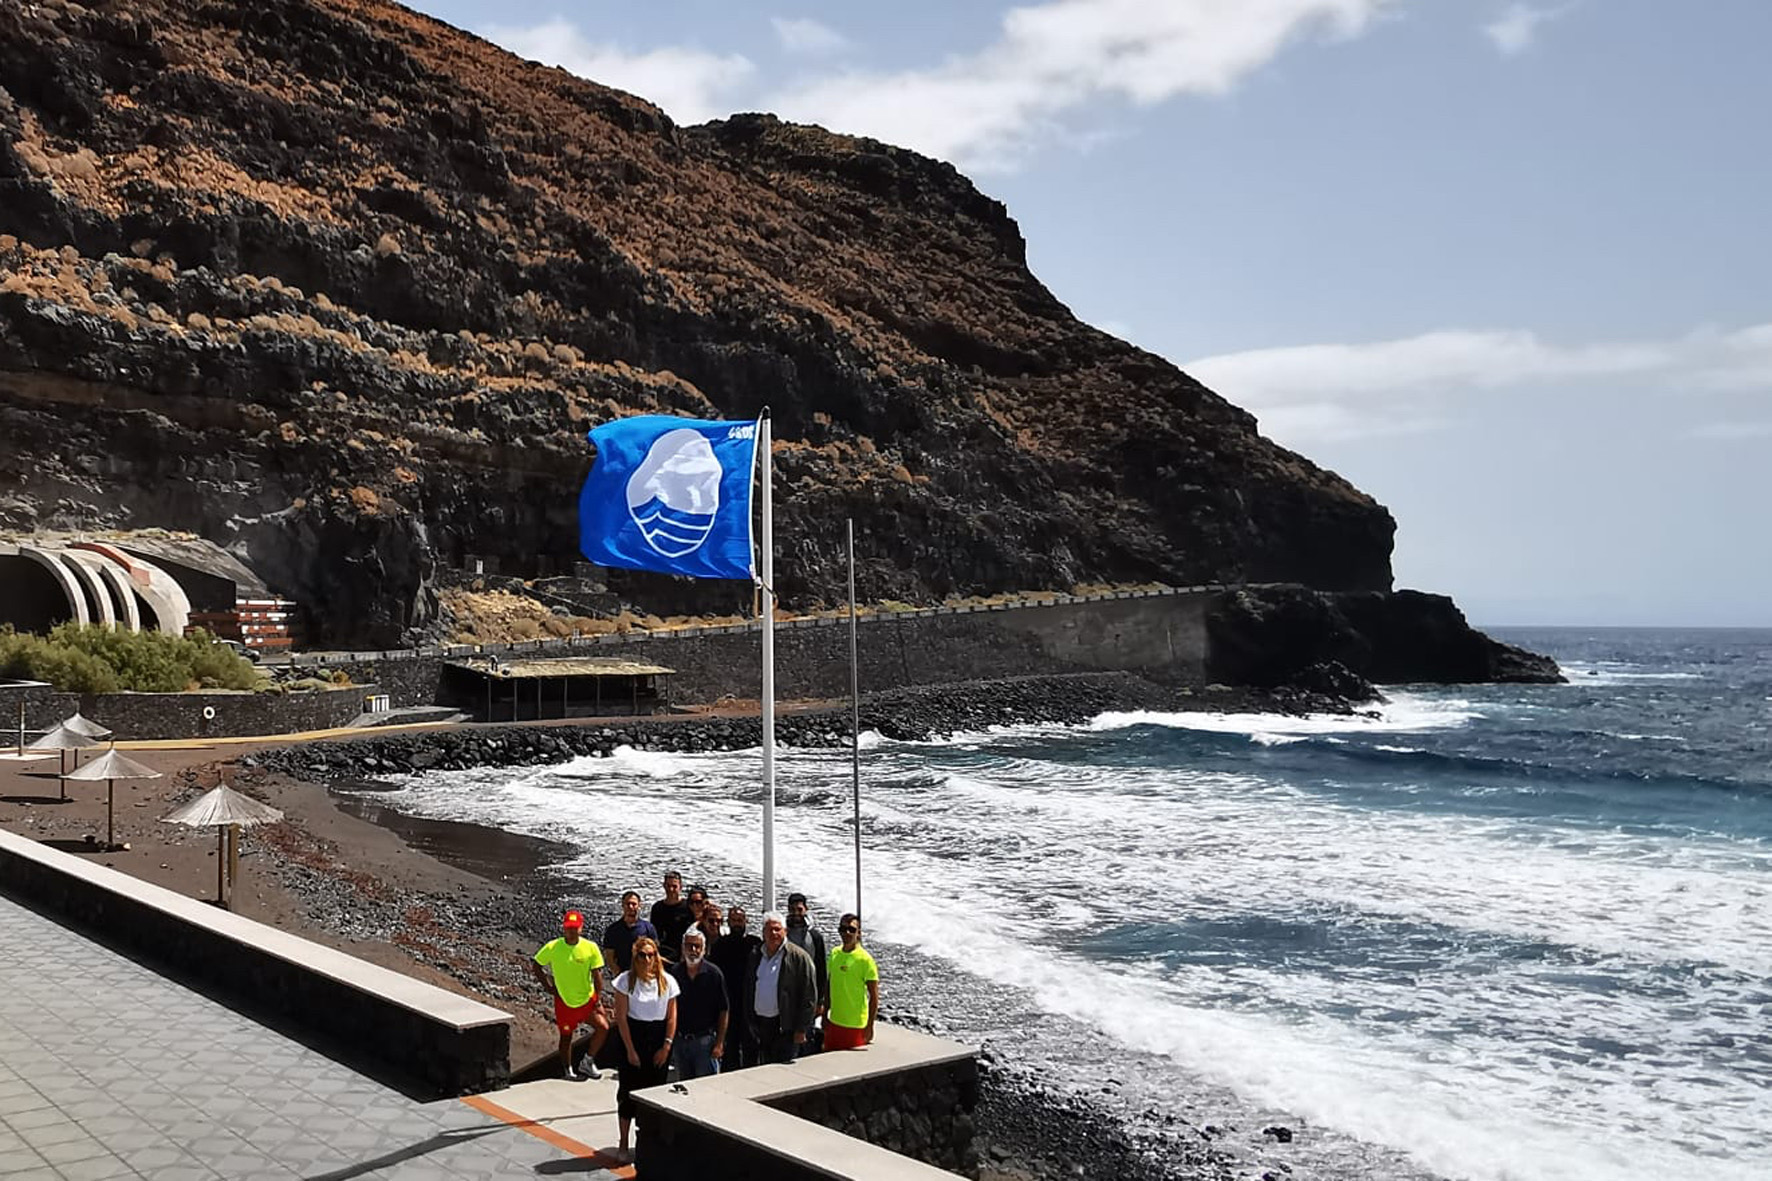 La playa de Timijiraque iza su Bandera Azul por cuarto año consecutivo